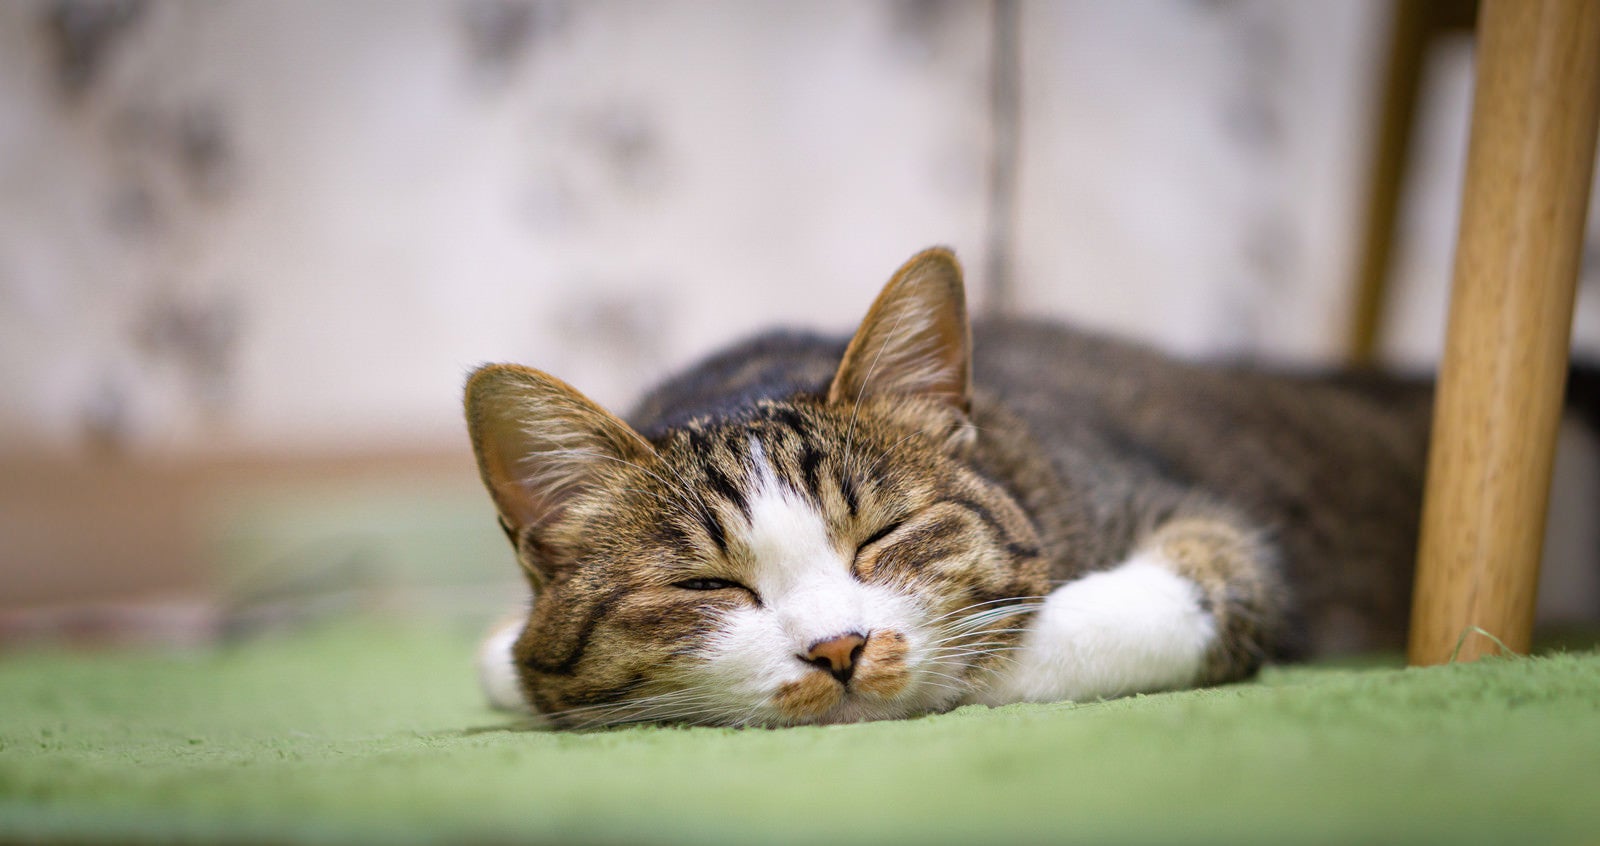 「カーペットの上で爆睡する猫」の写真